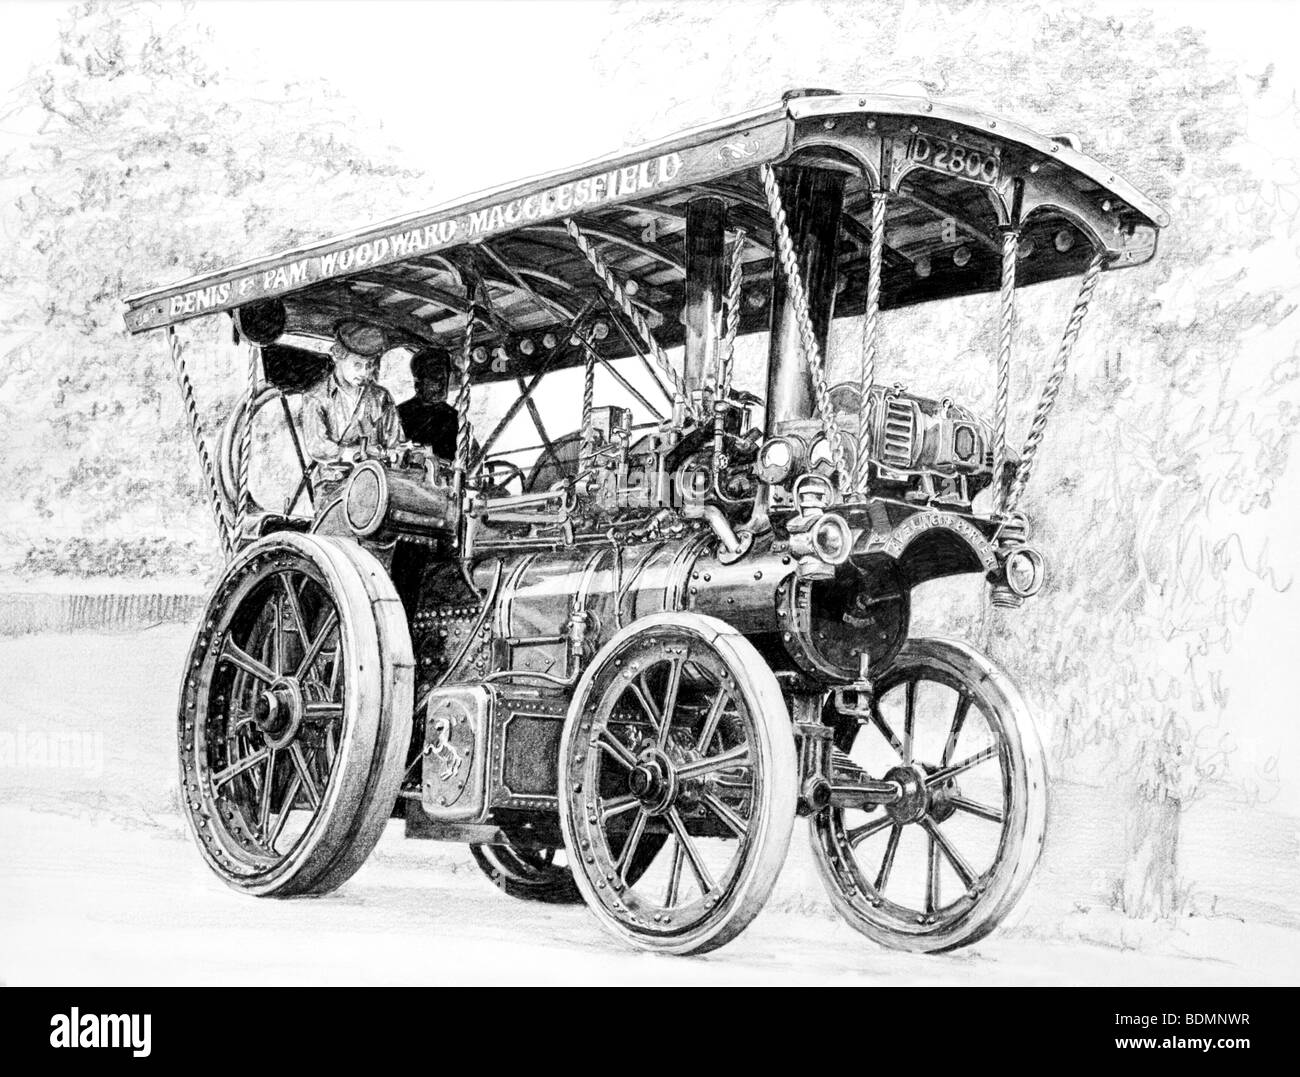 Reino Unido, Cheshiire, Macclesfield, Aveling y Porter dibujo a lápiz del motor de tracción Foto de stock